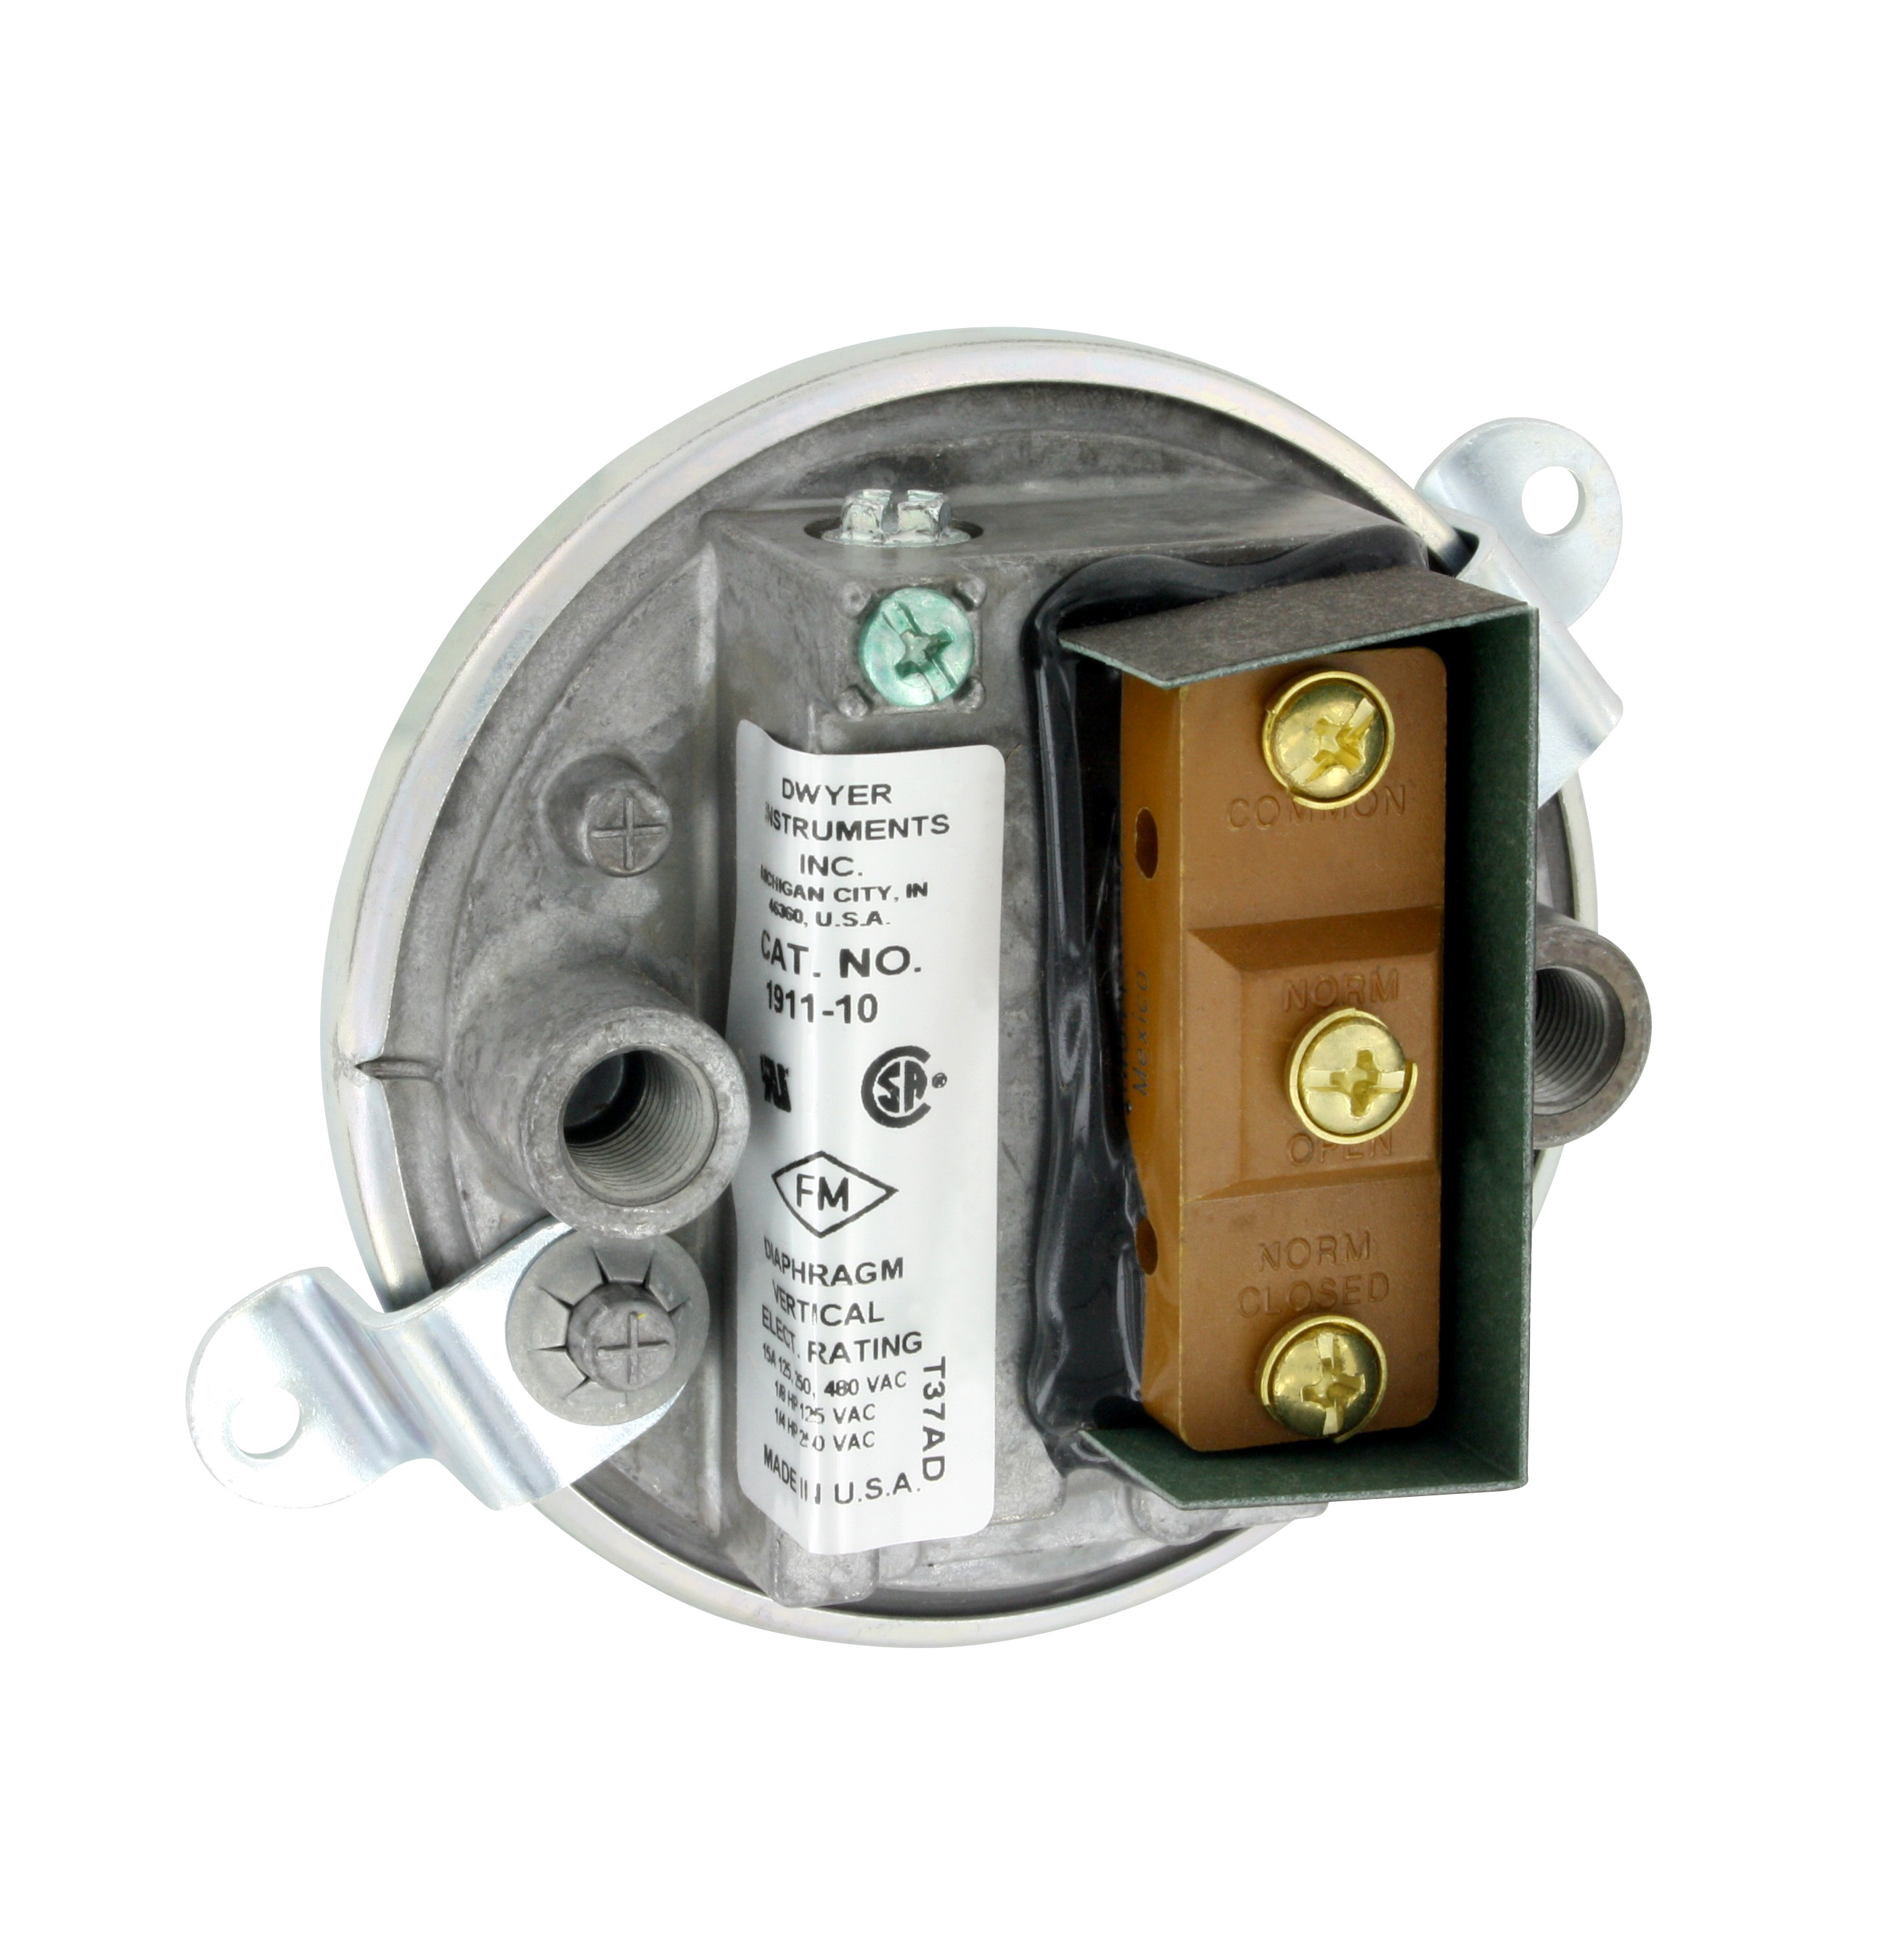 Druckschalter DWYER 1910-0 Low Differential Pressure Switch 